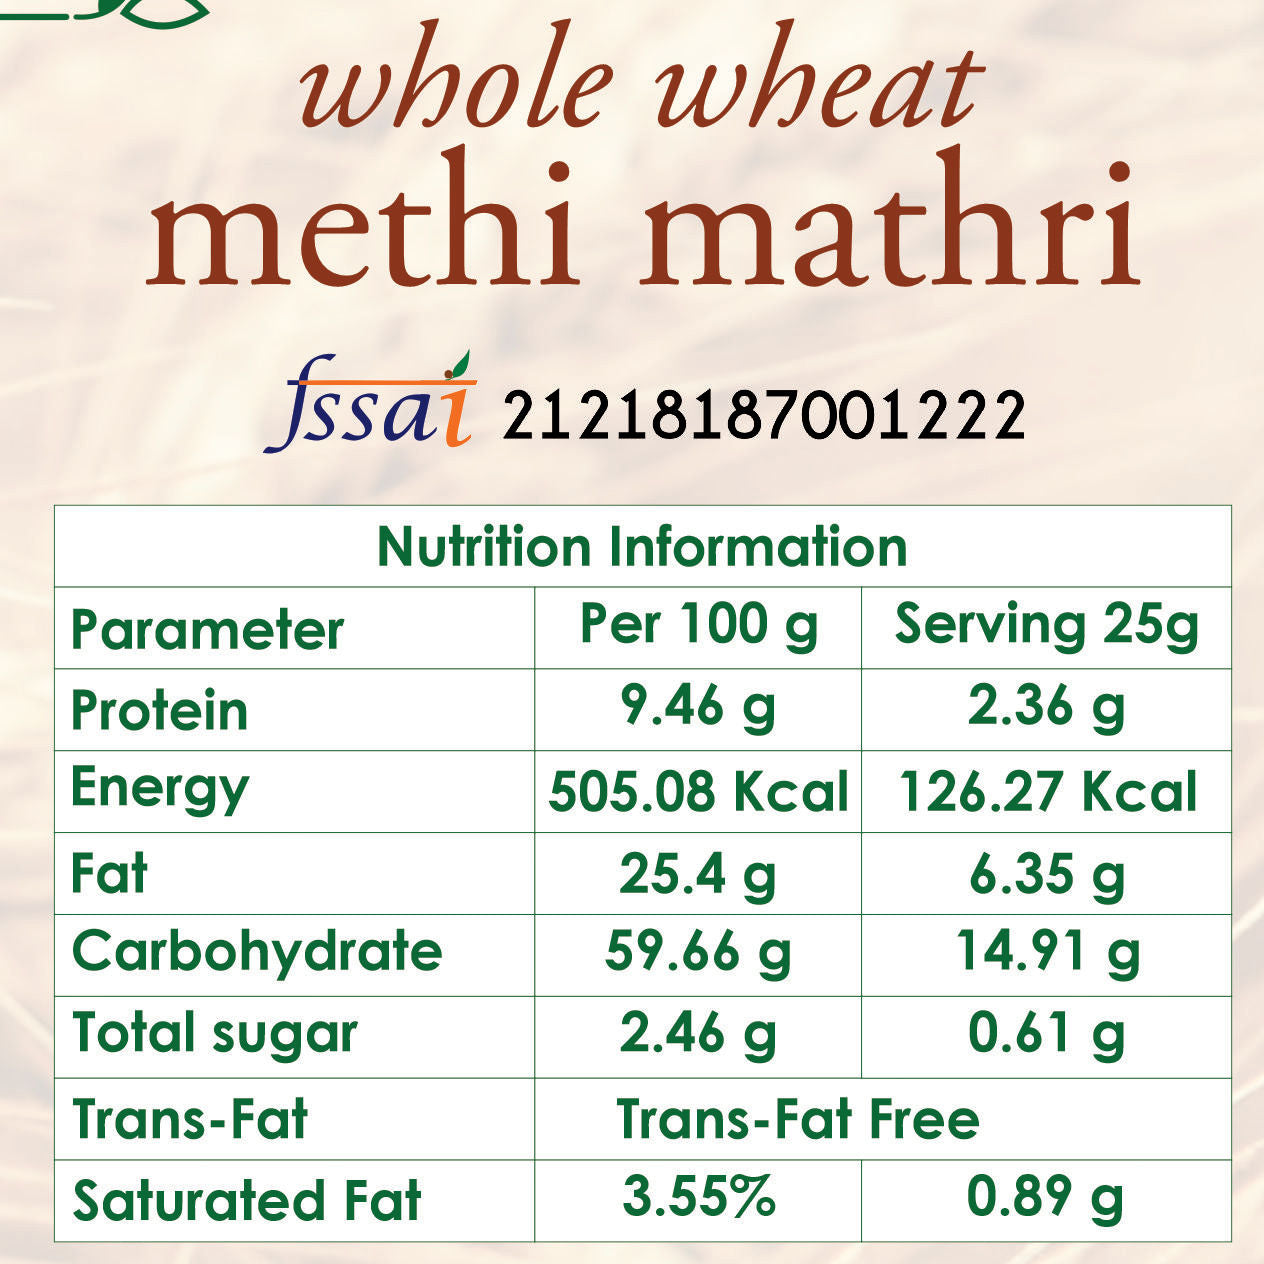 whole wheat methi mathri